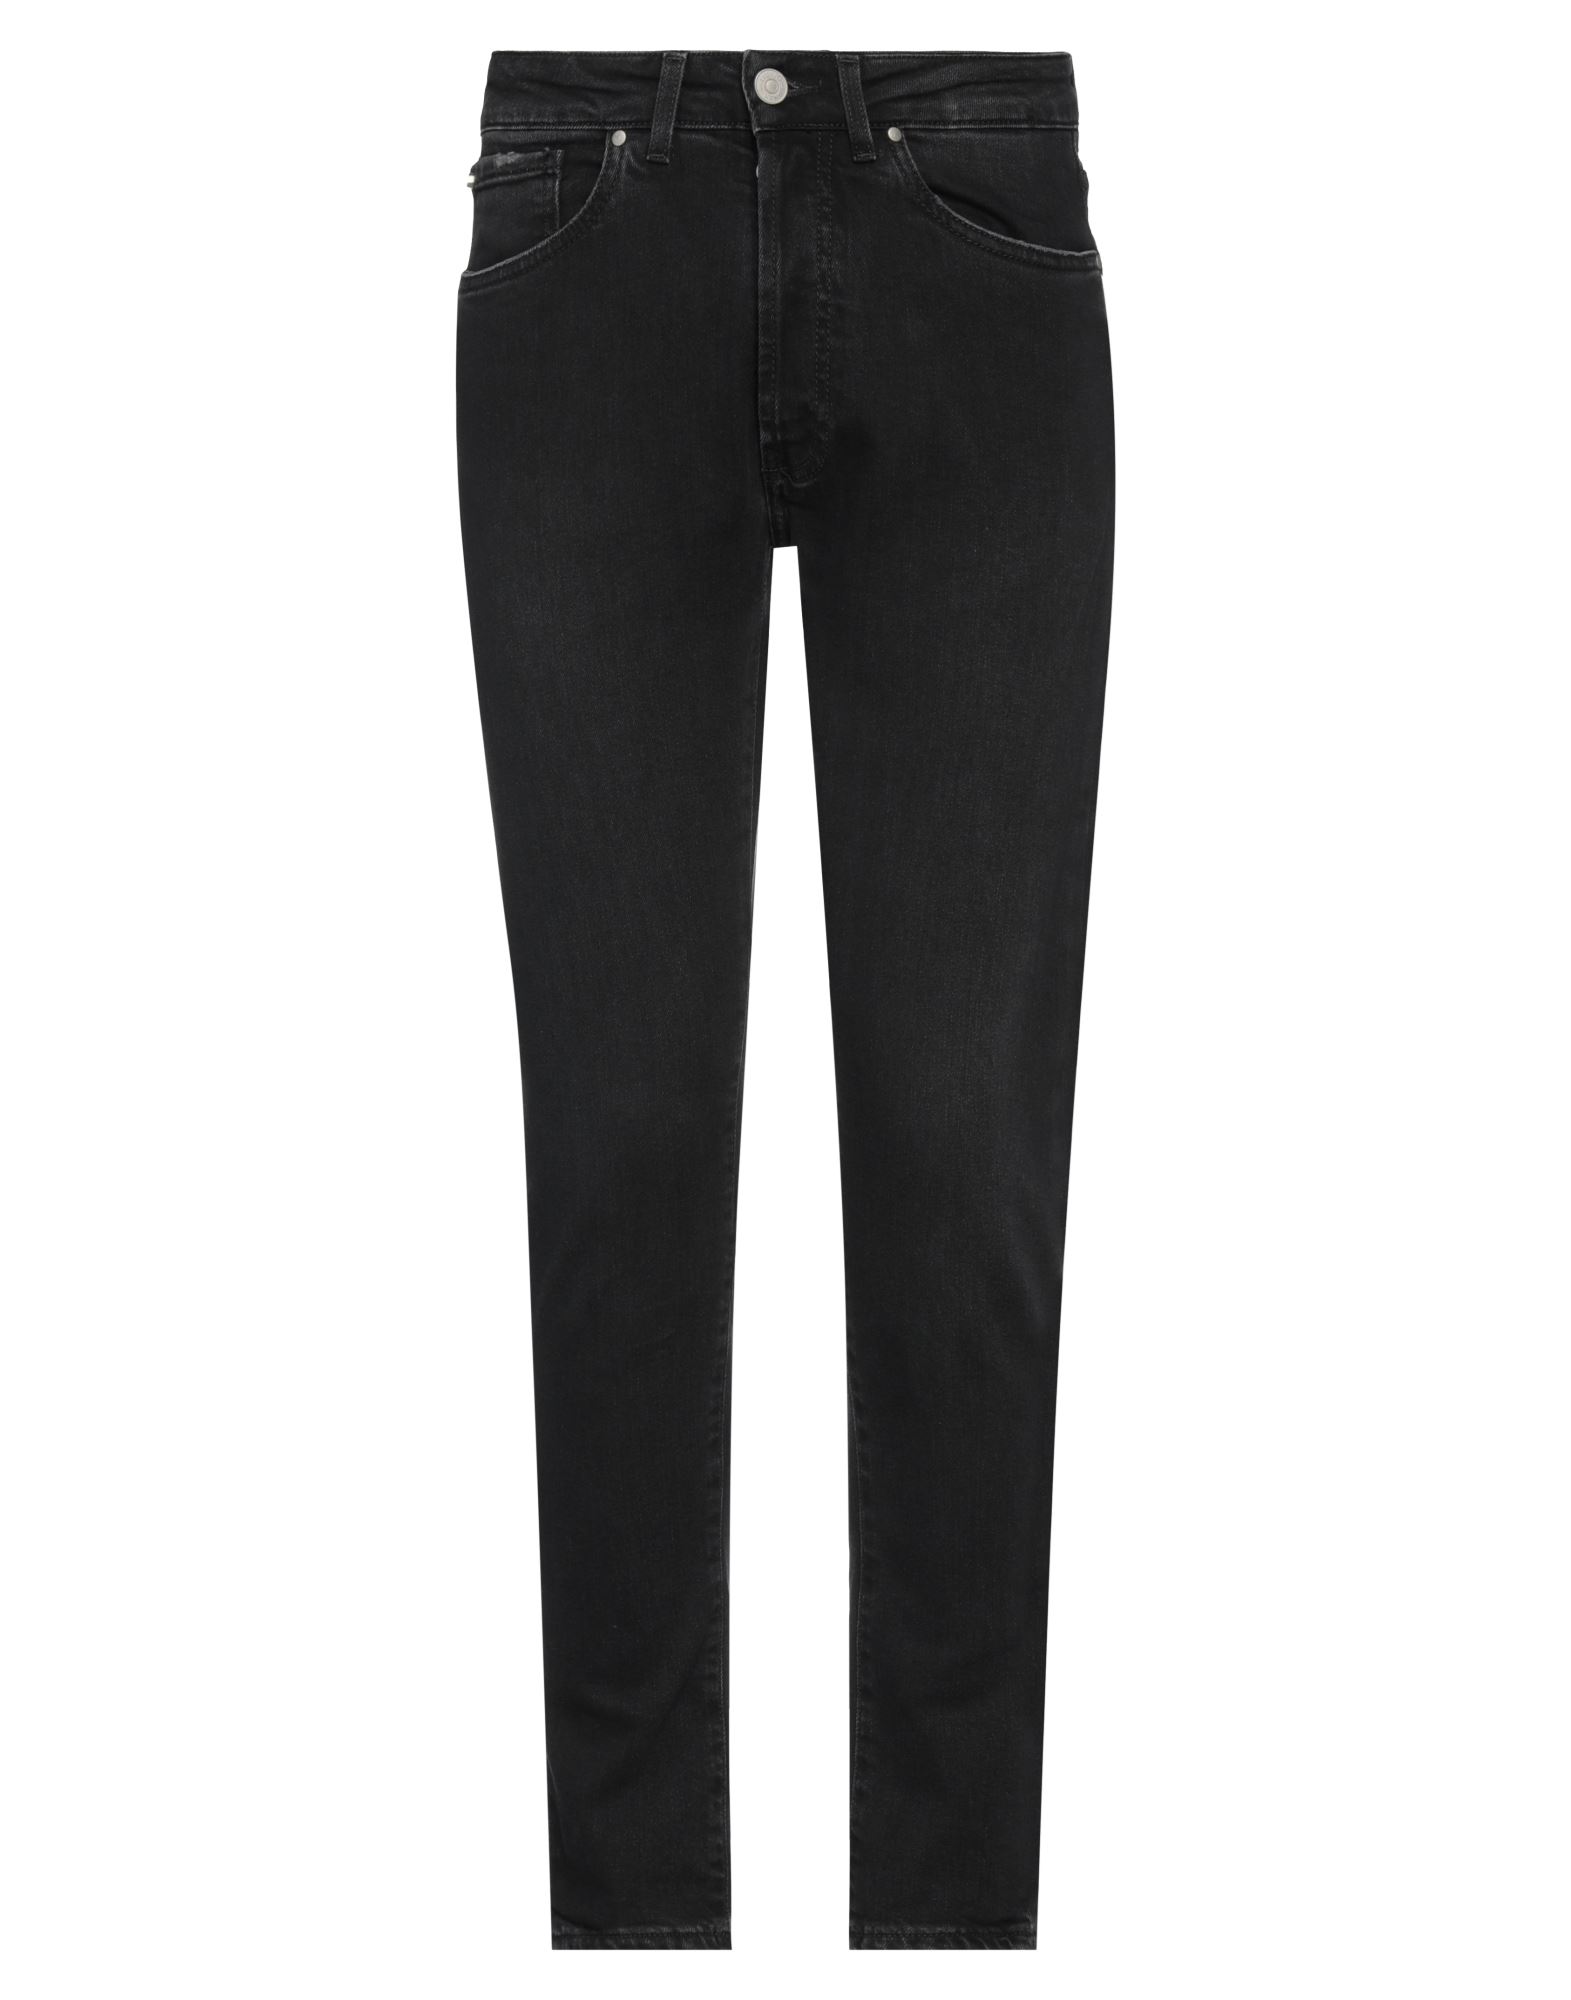 Liu •jo Man Man Jeans Black Size 32 Cotton, Elastane